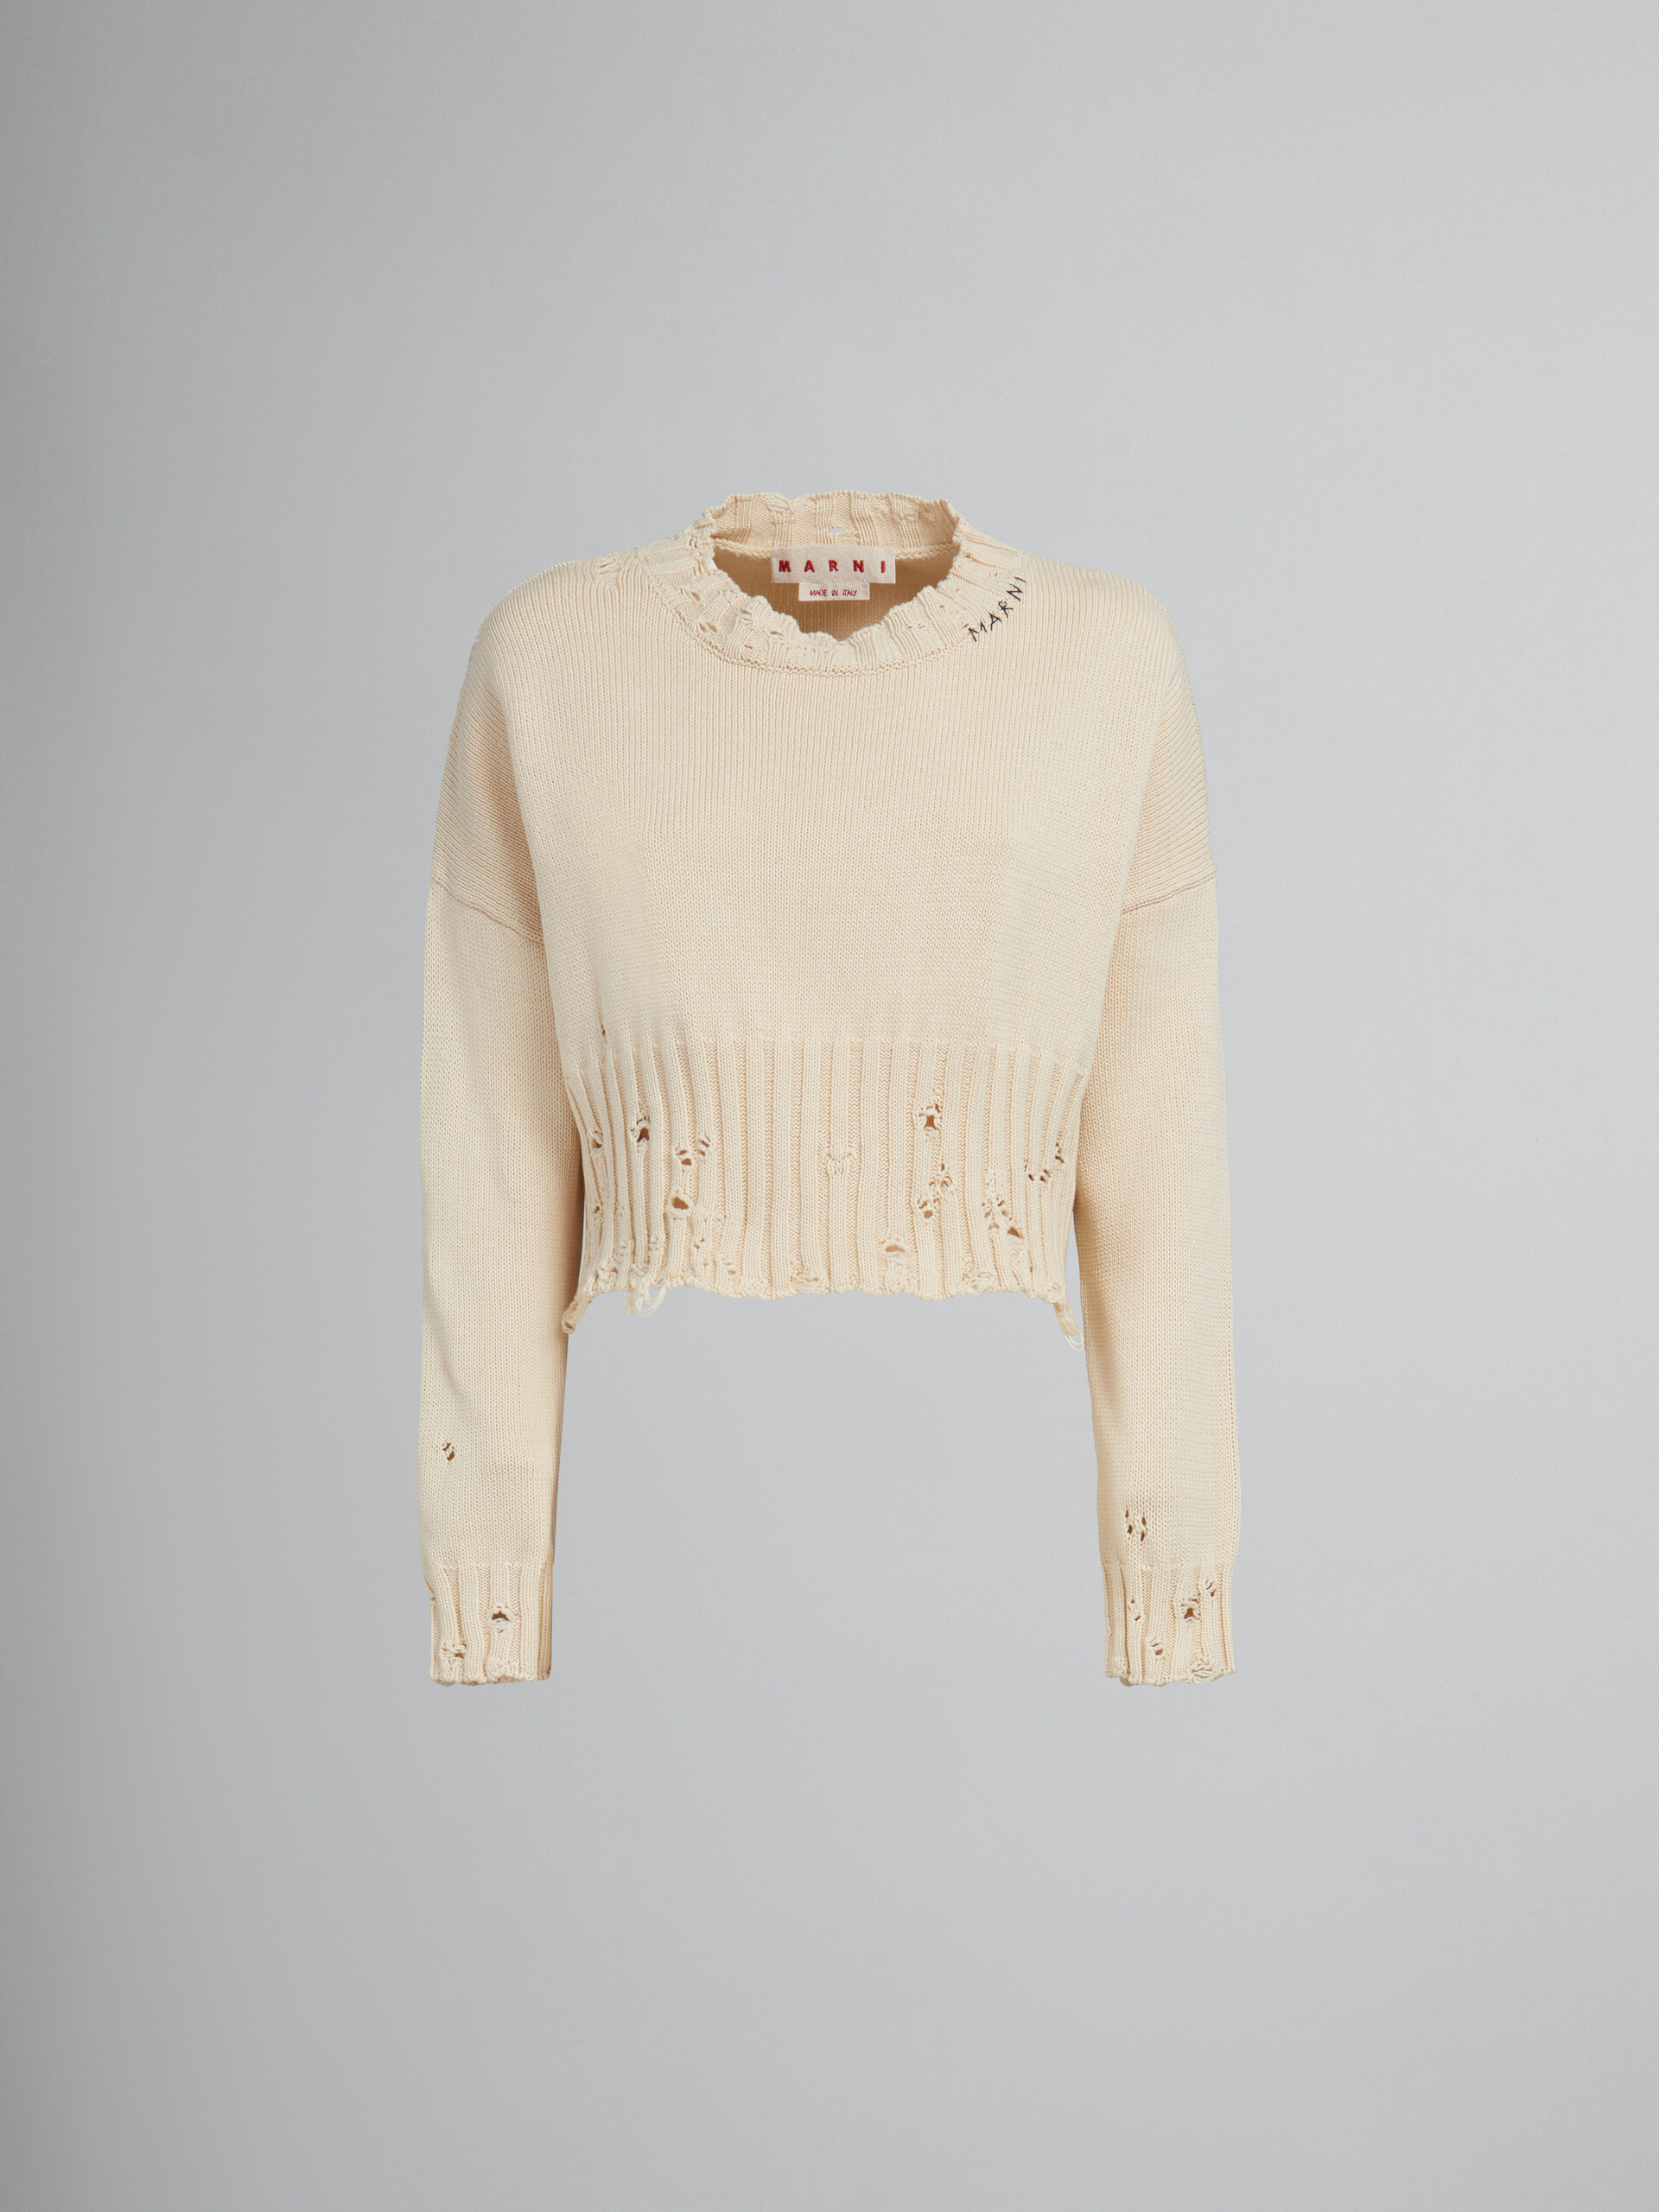 Kurzer weißer Baumwollpullover - Pullover - Image 1